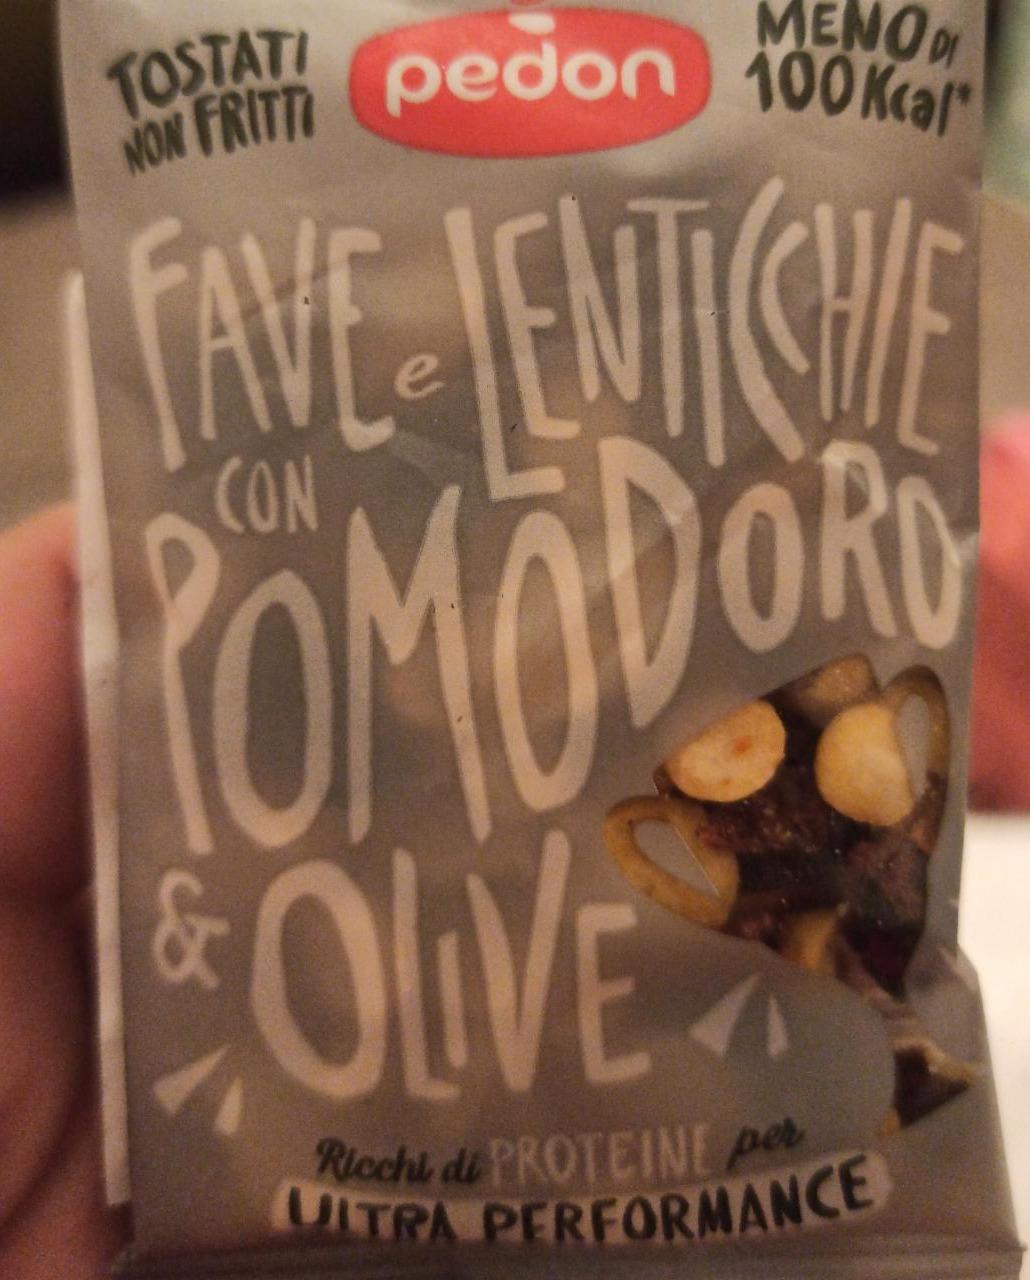 Fotografie - Fave e lenticchie con pomodoro & olive Pedon